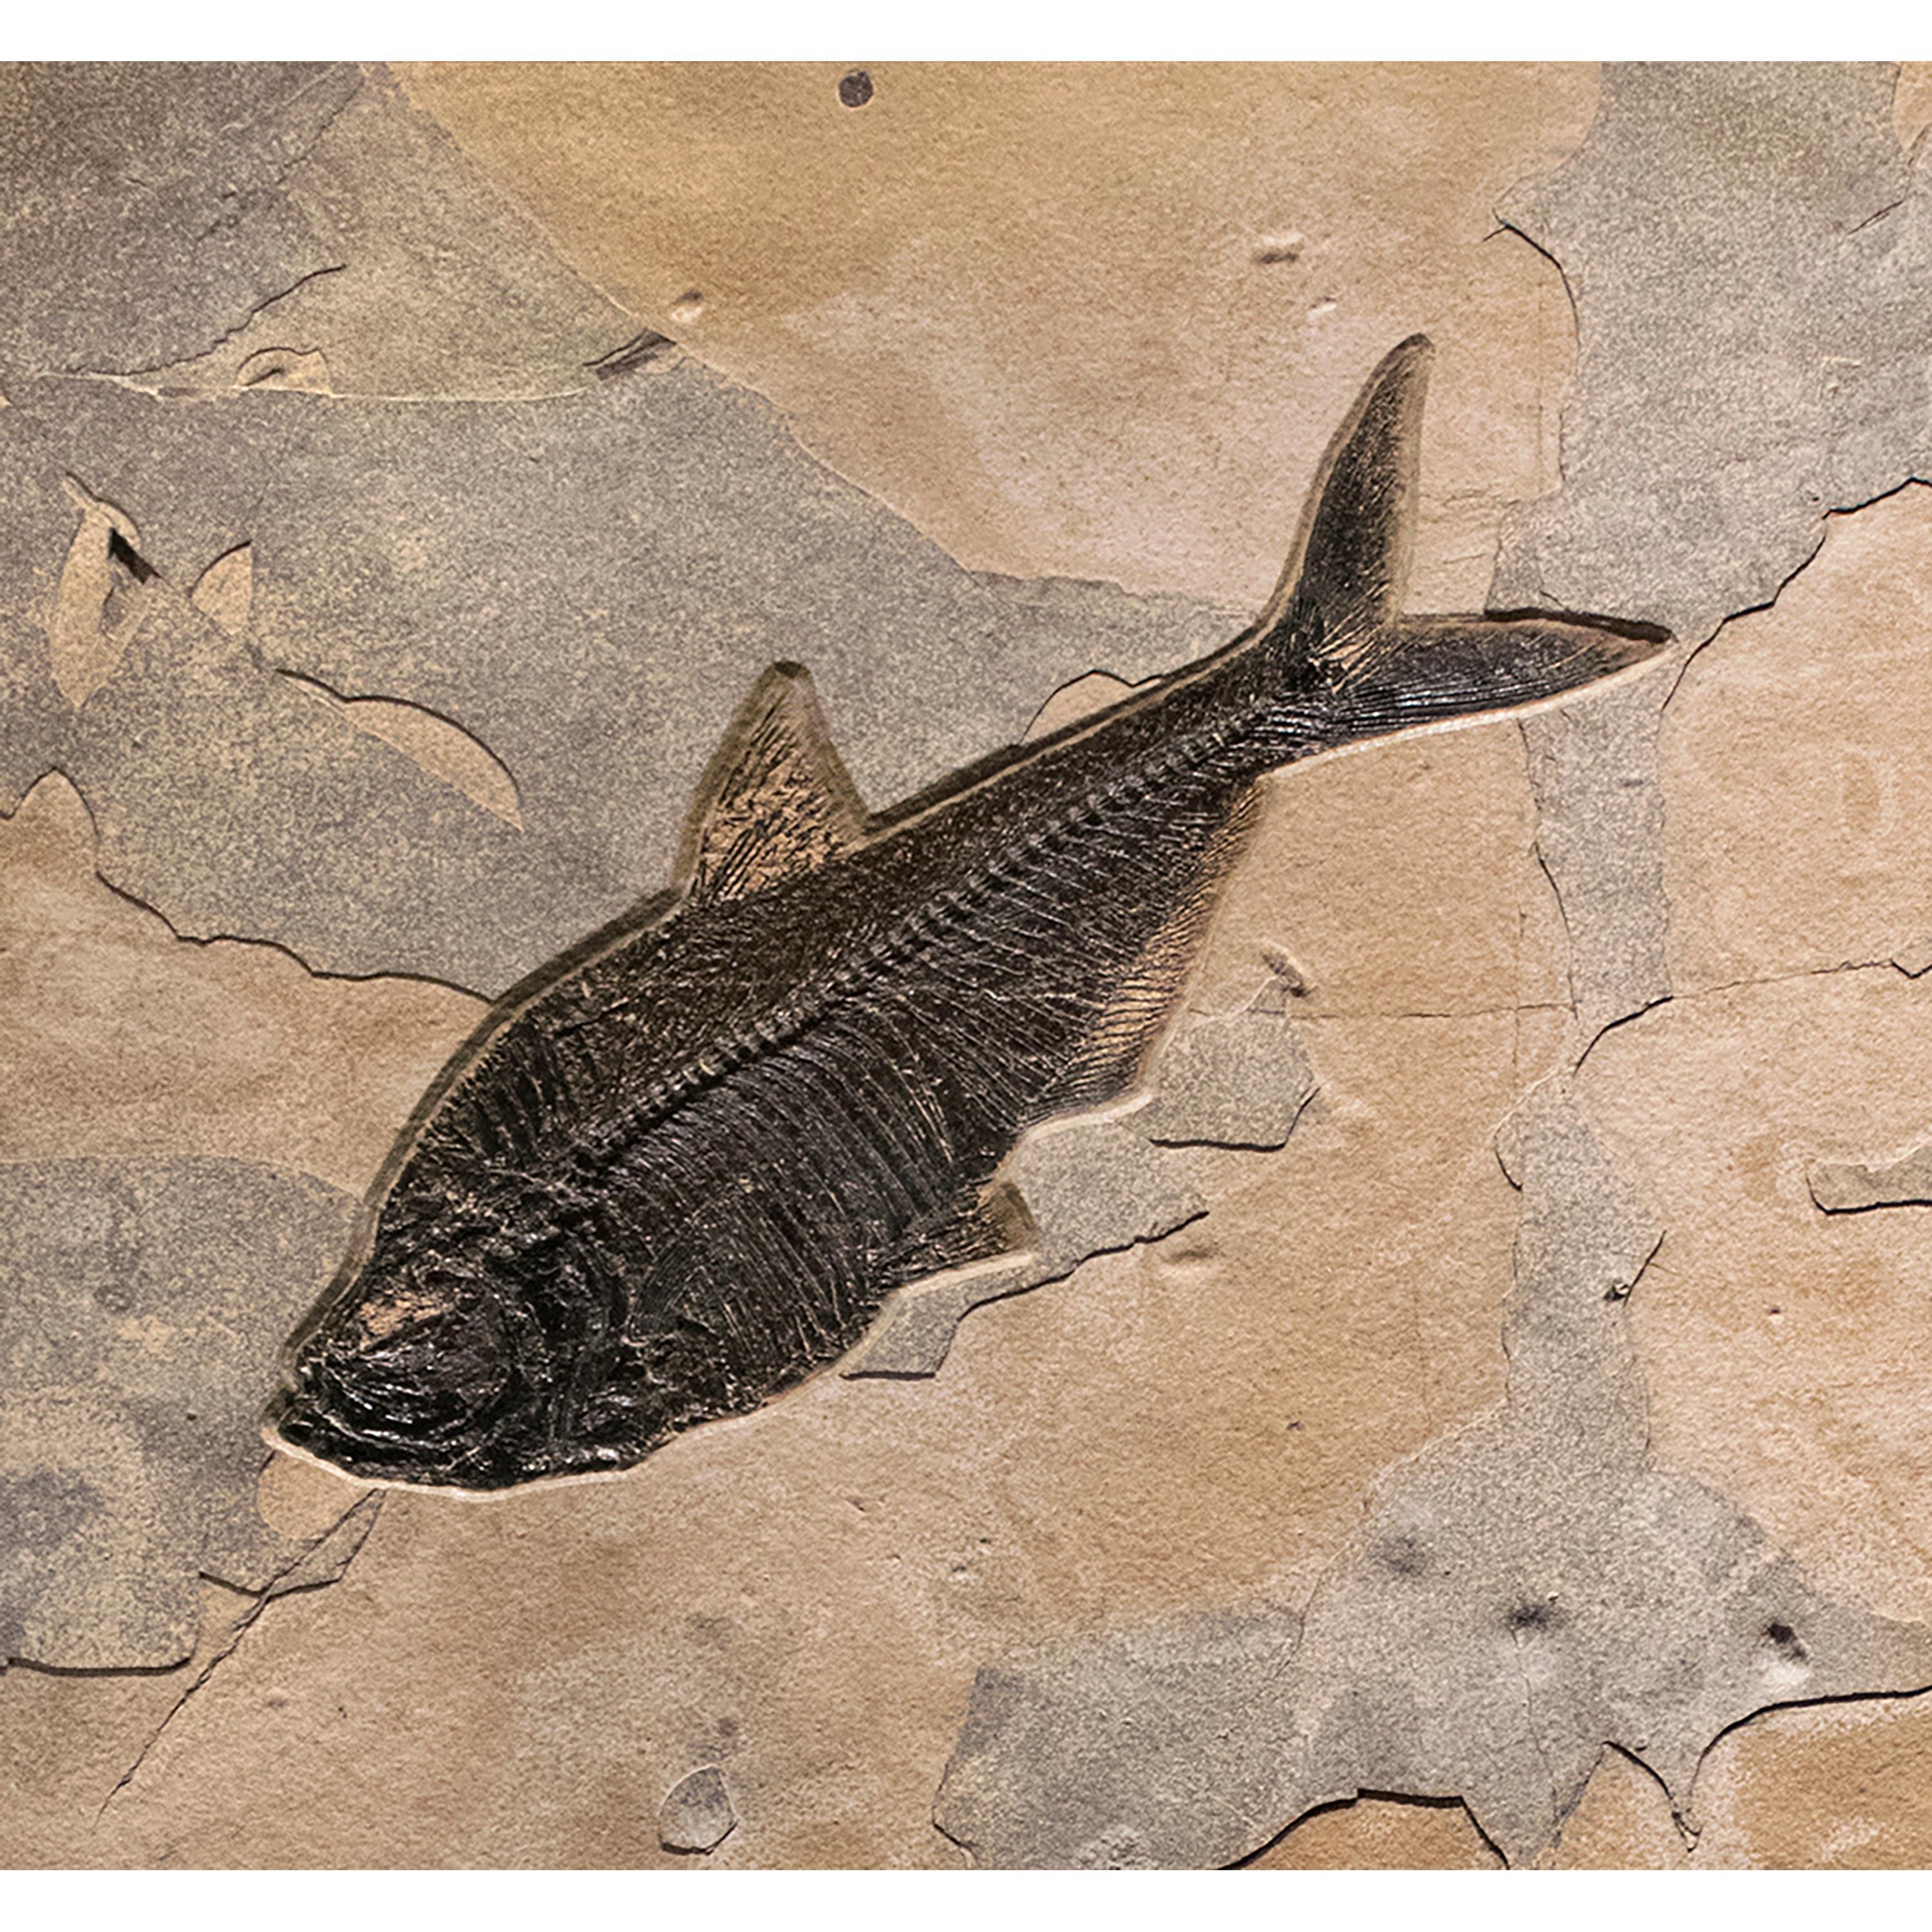 fish fossils